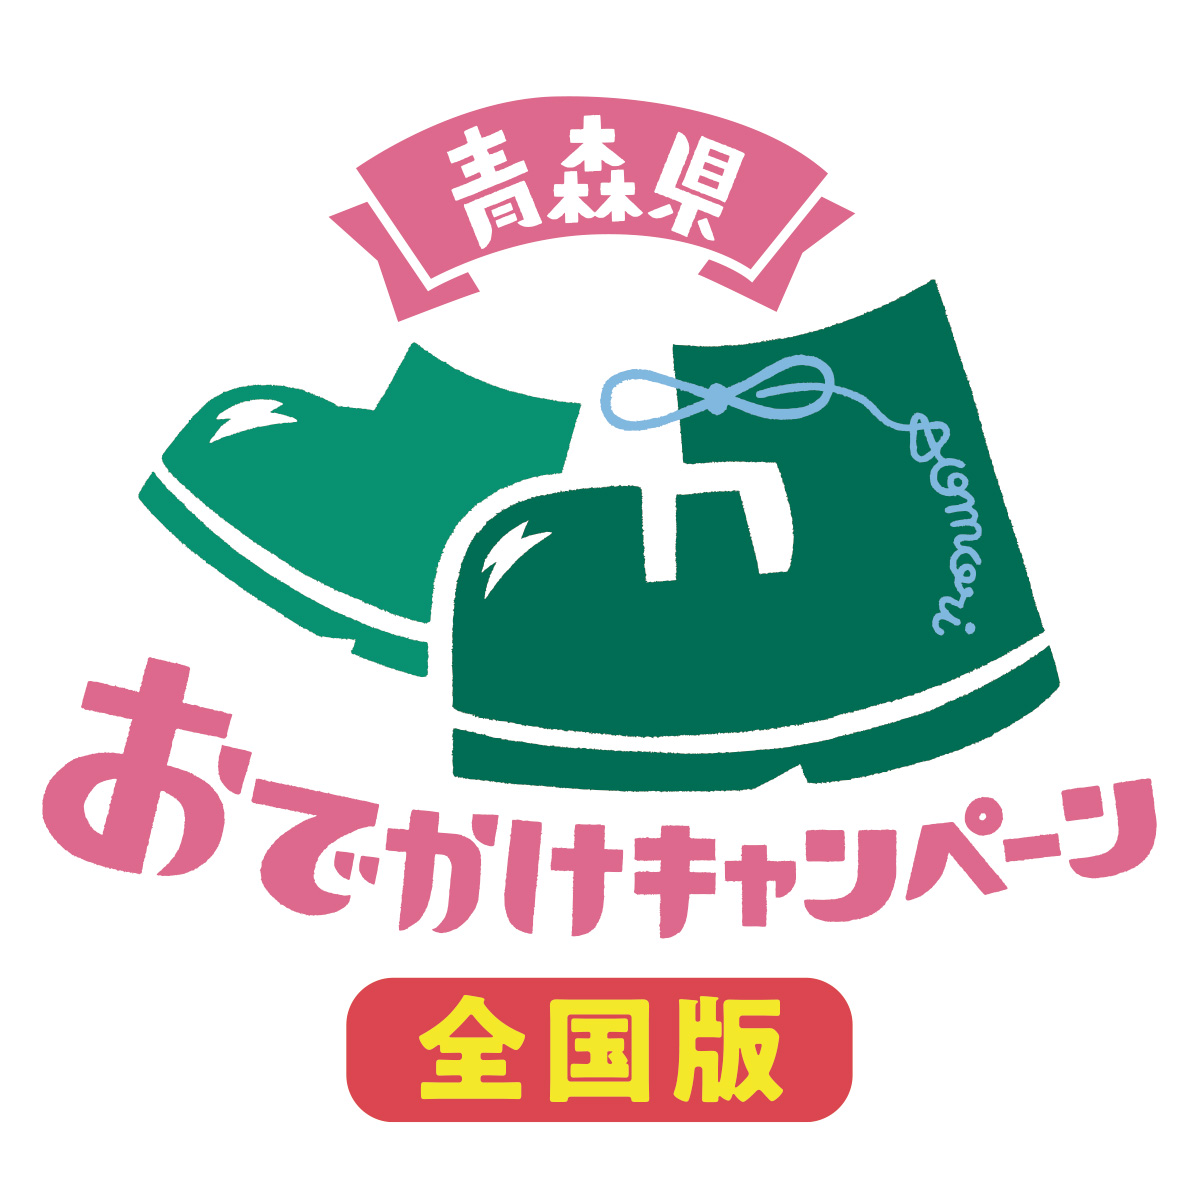 青森県 おでかけキャンペーン 全国版